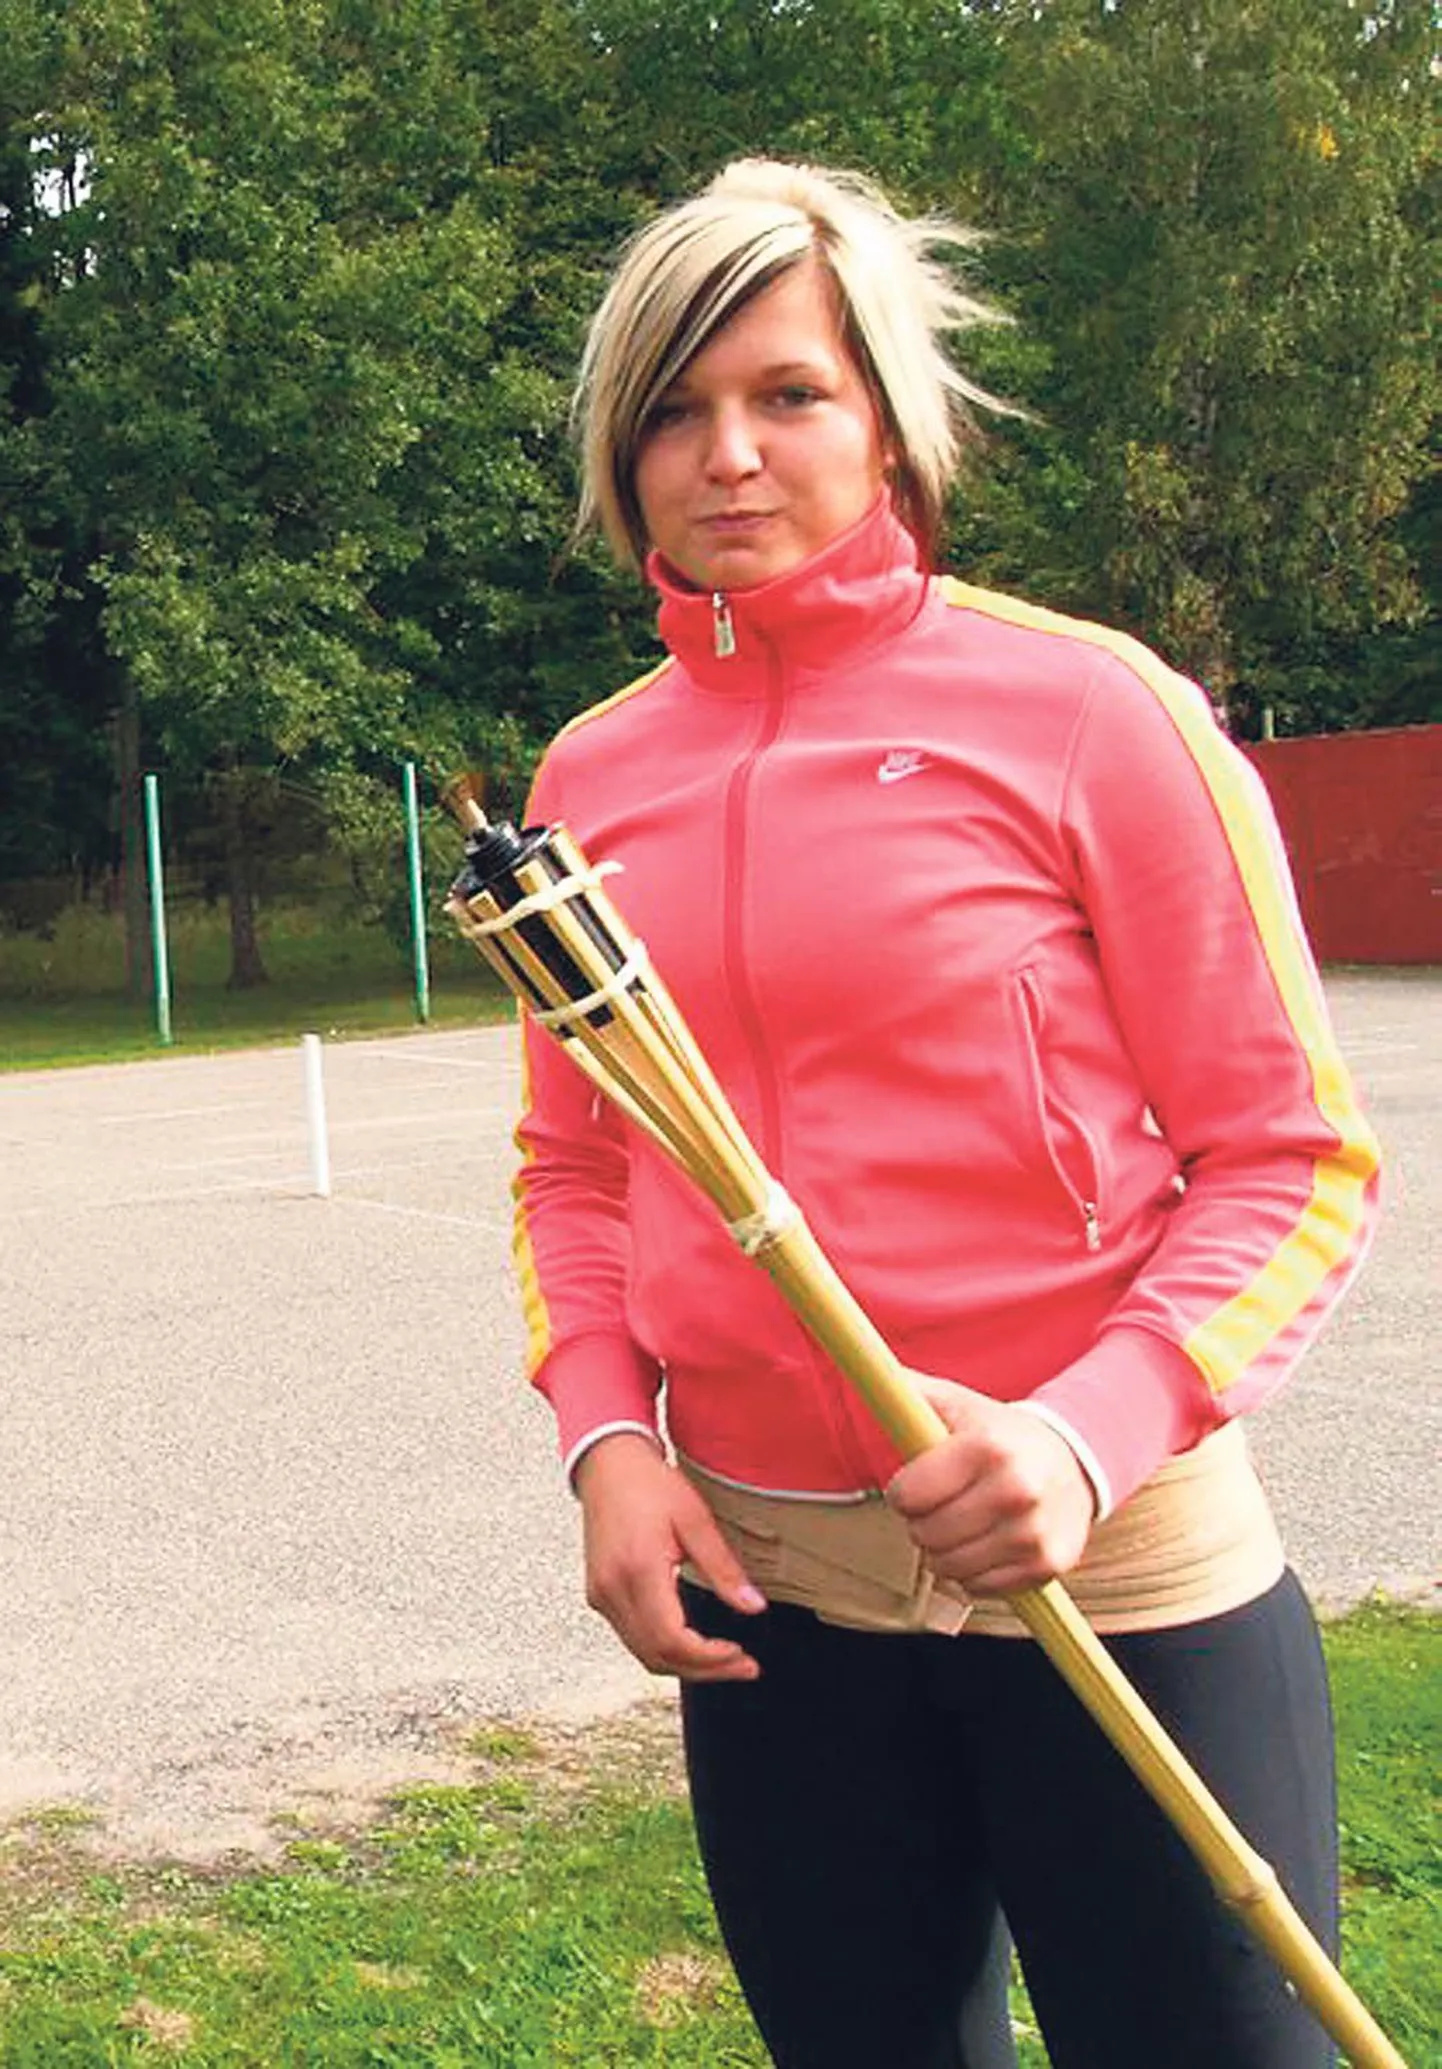 Pärnumaa aasta parim spordineiu, Tõstamaa keskkooli abiturient Liina Laasma sai kooli traditsioonilisel spordipäeval austava ülesande tuli süüdata.